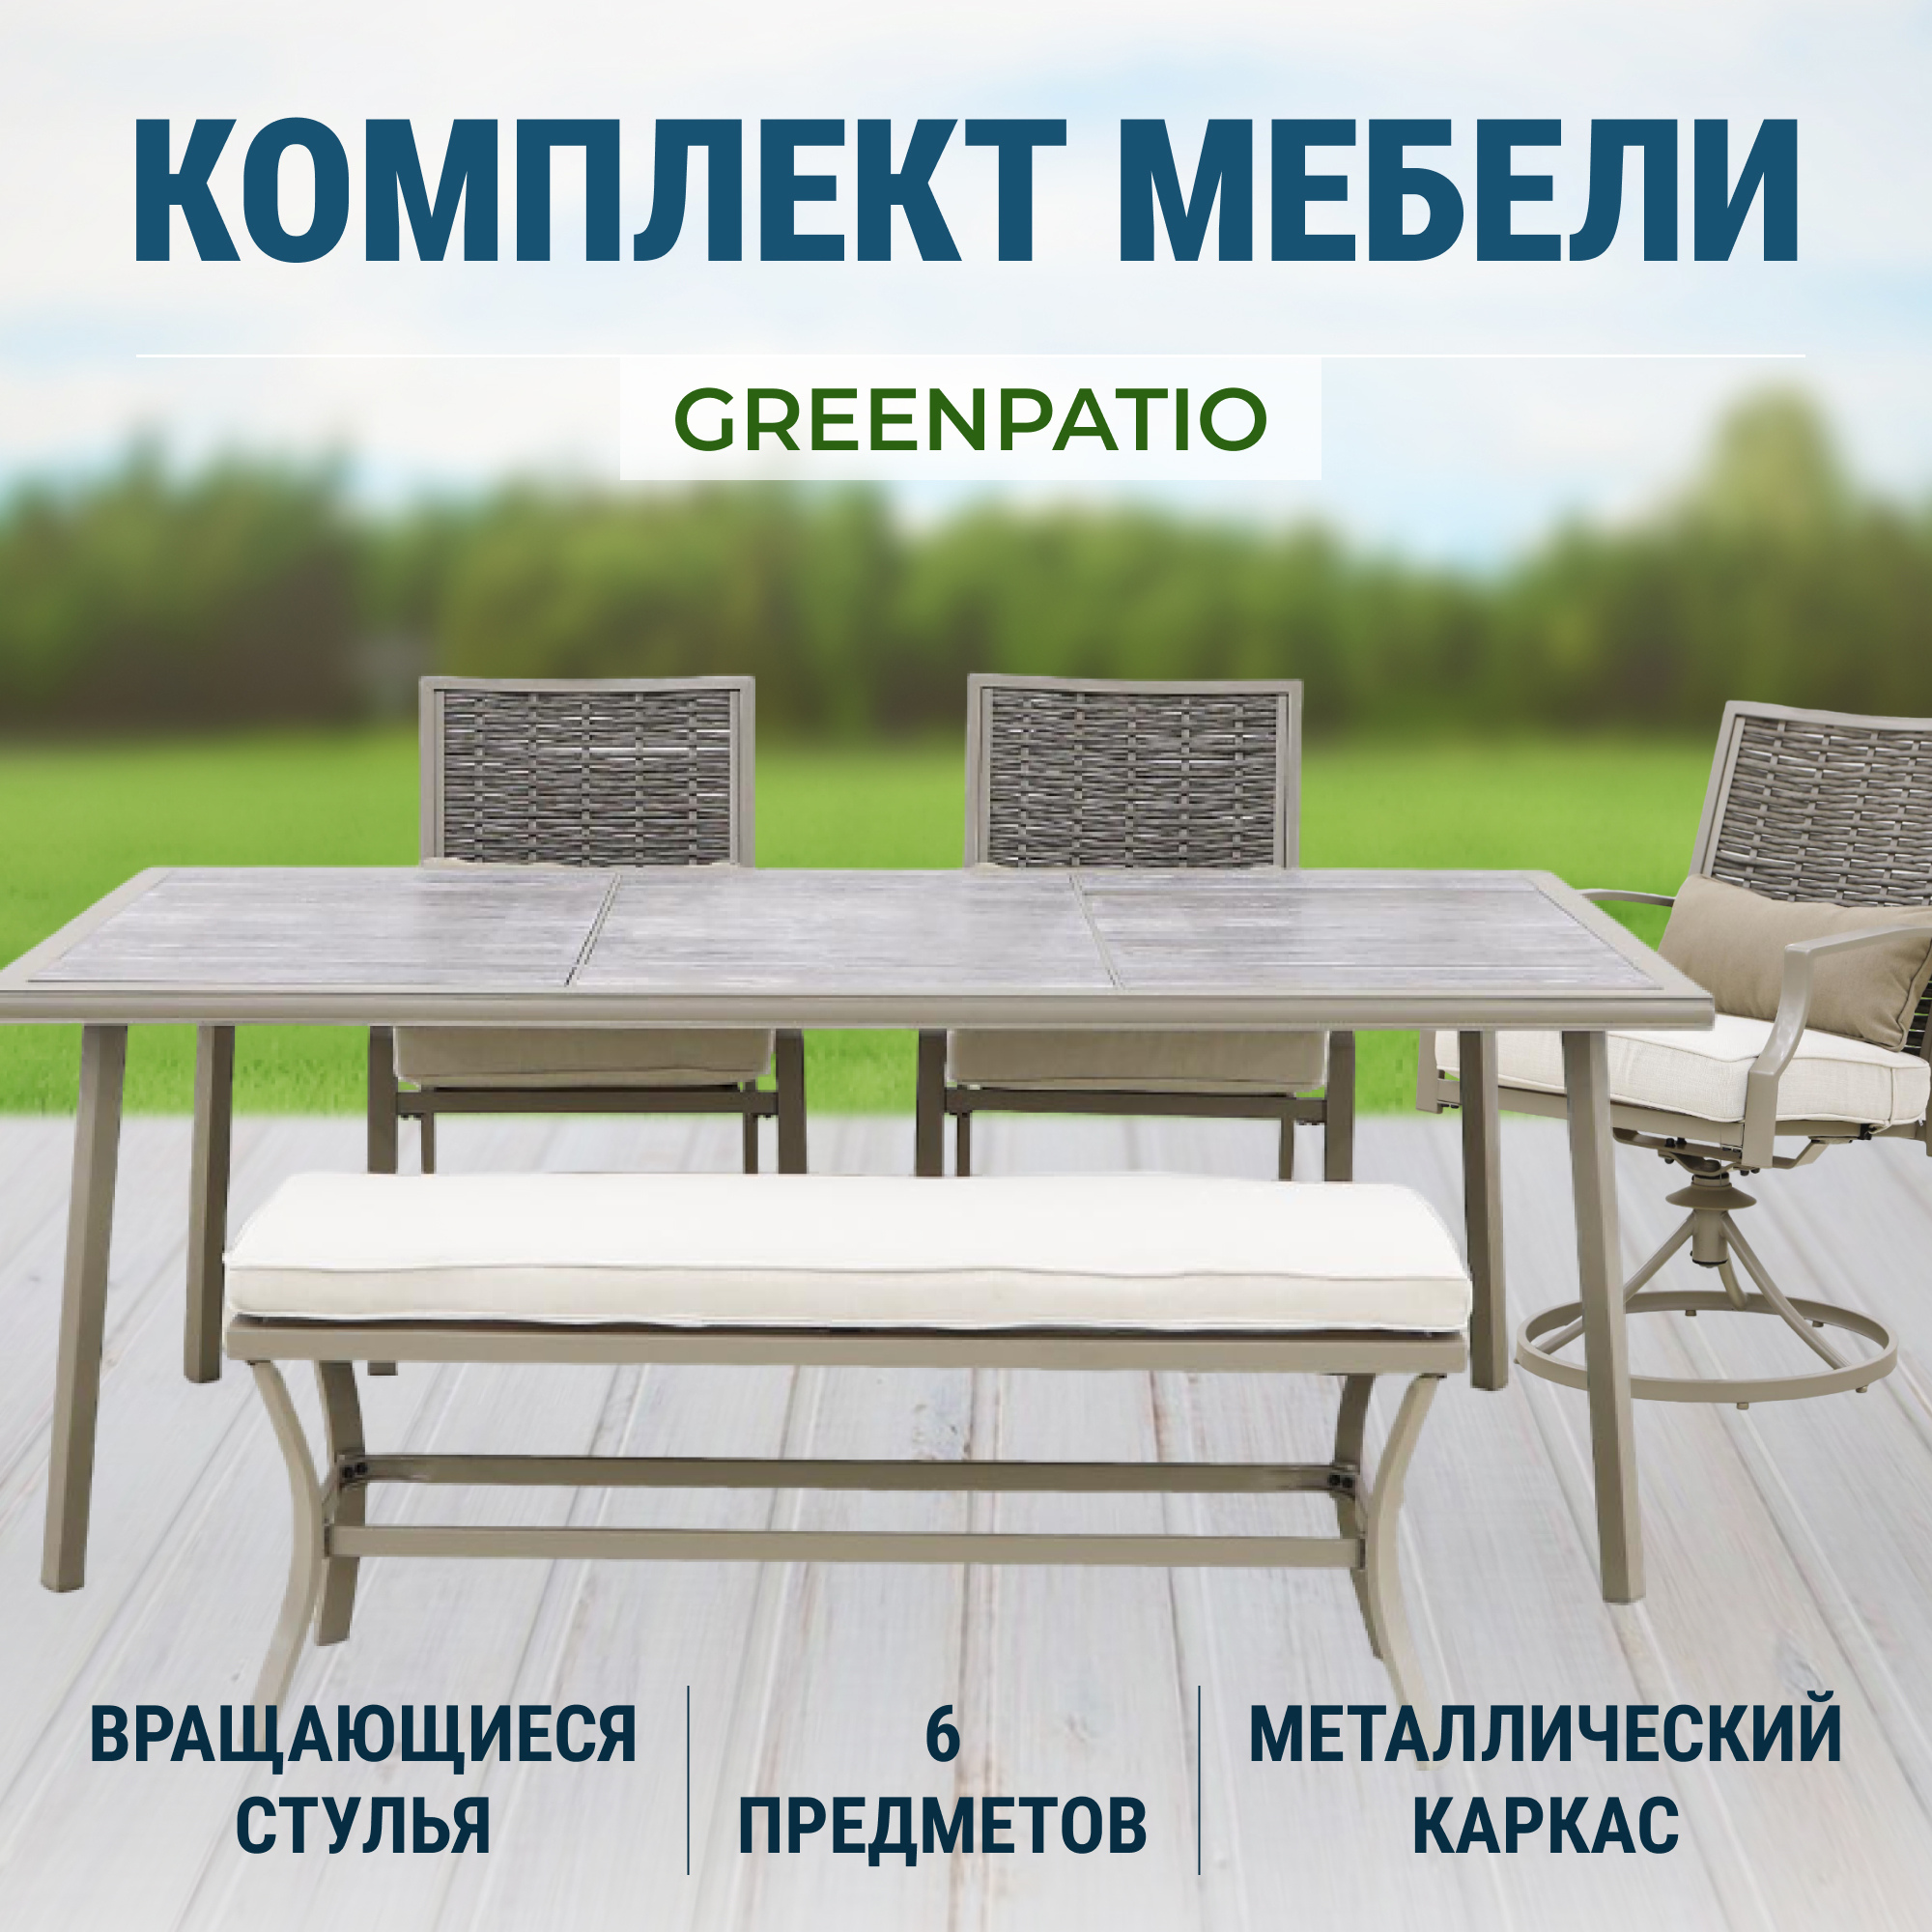 Комплект мебели Greenpatio из 6 предметов (818), цвет бежевый - фото 2